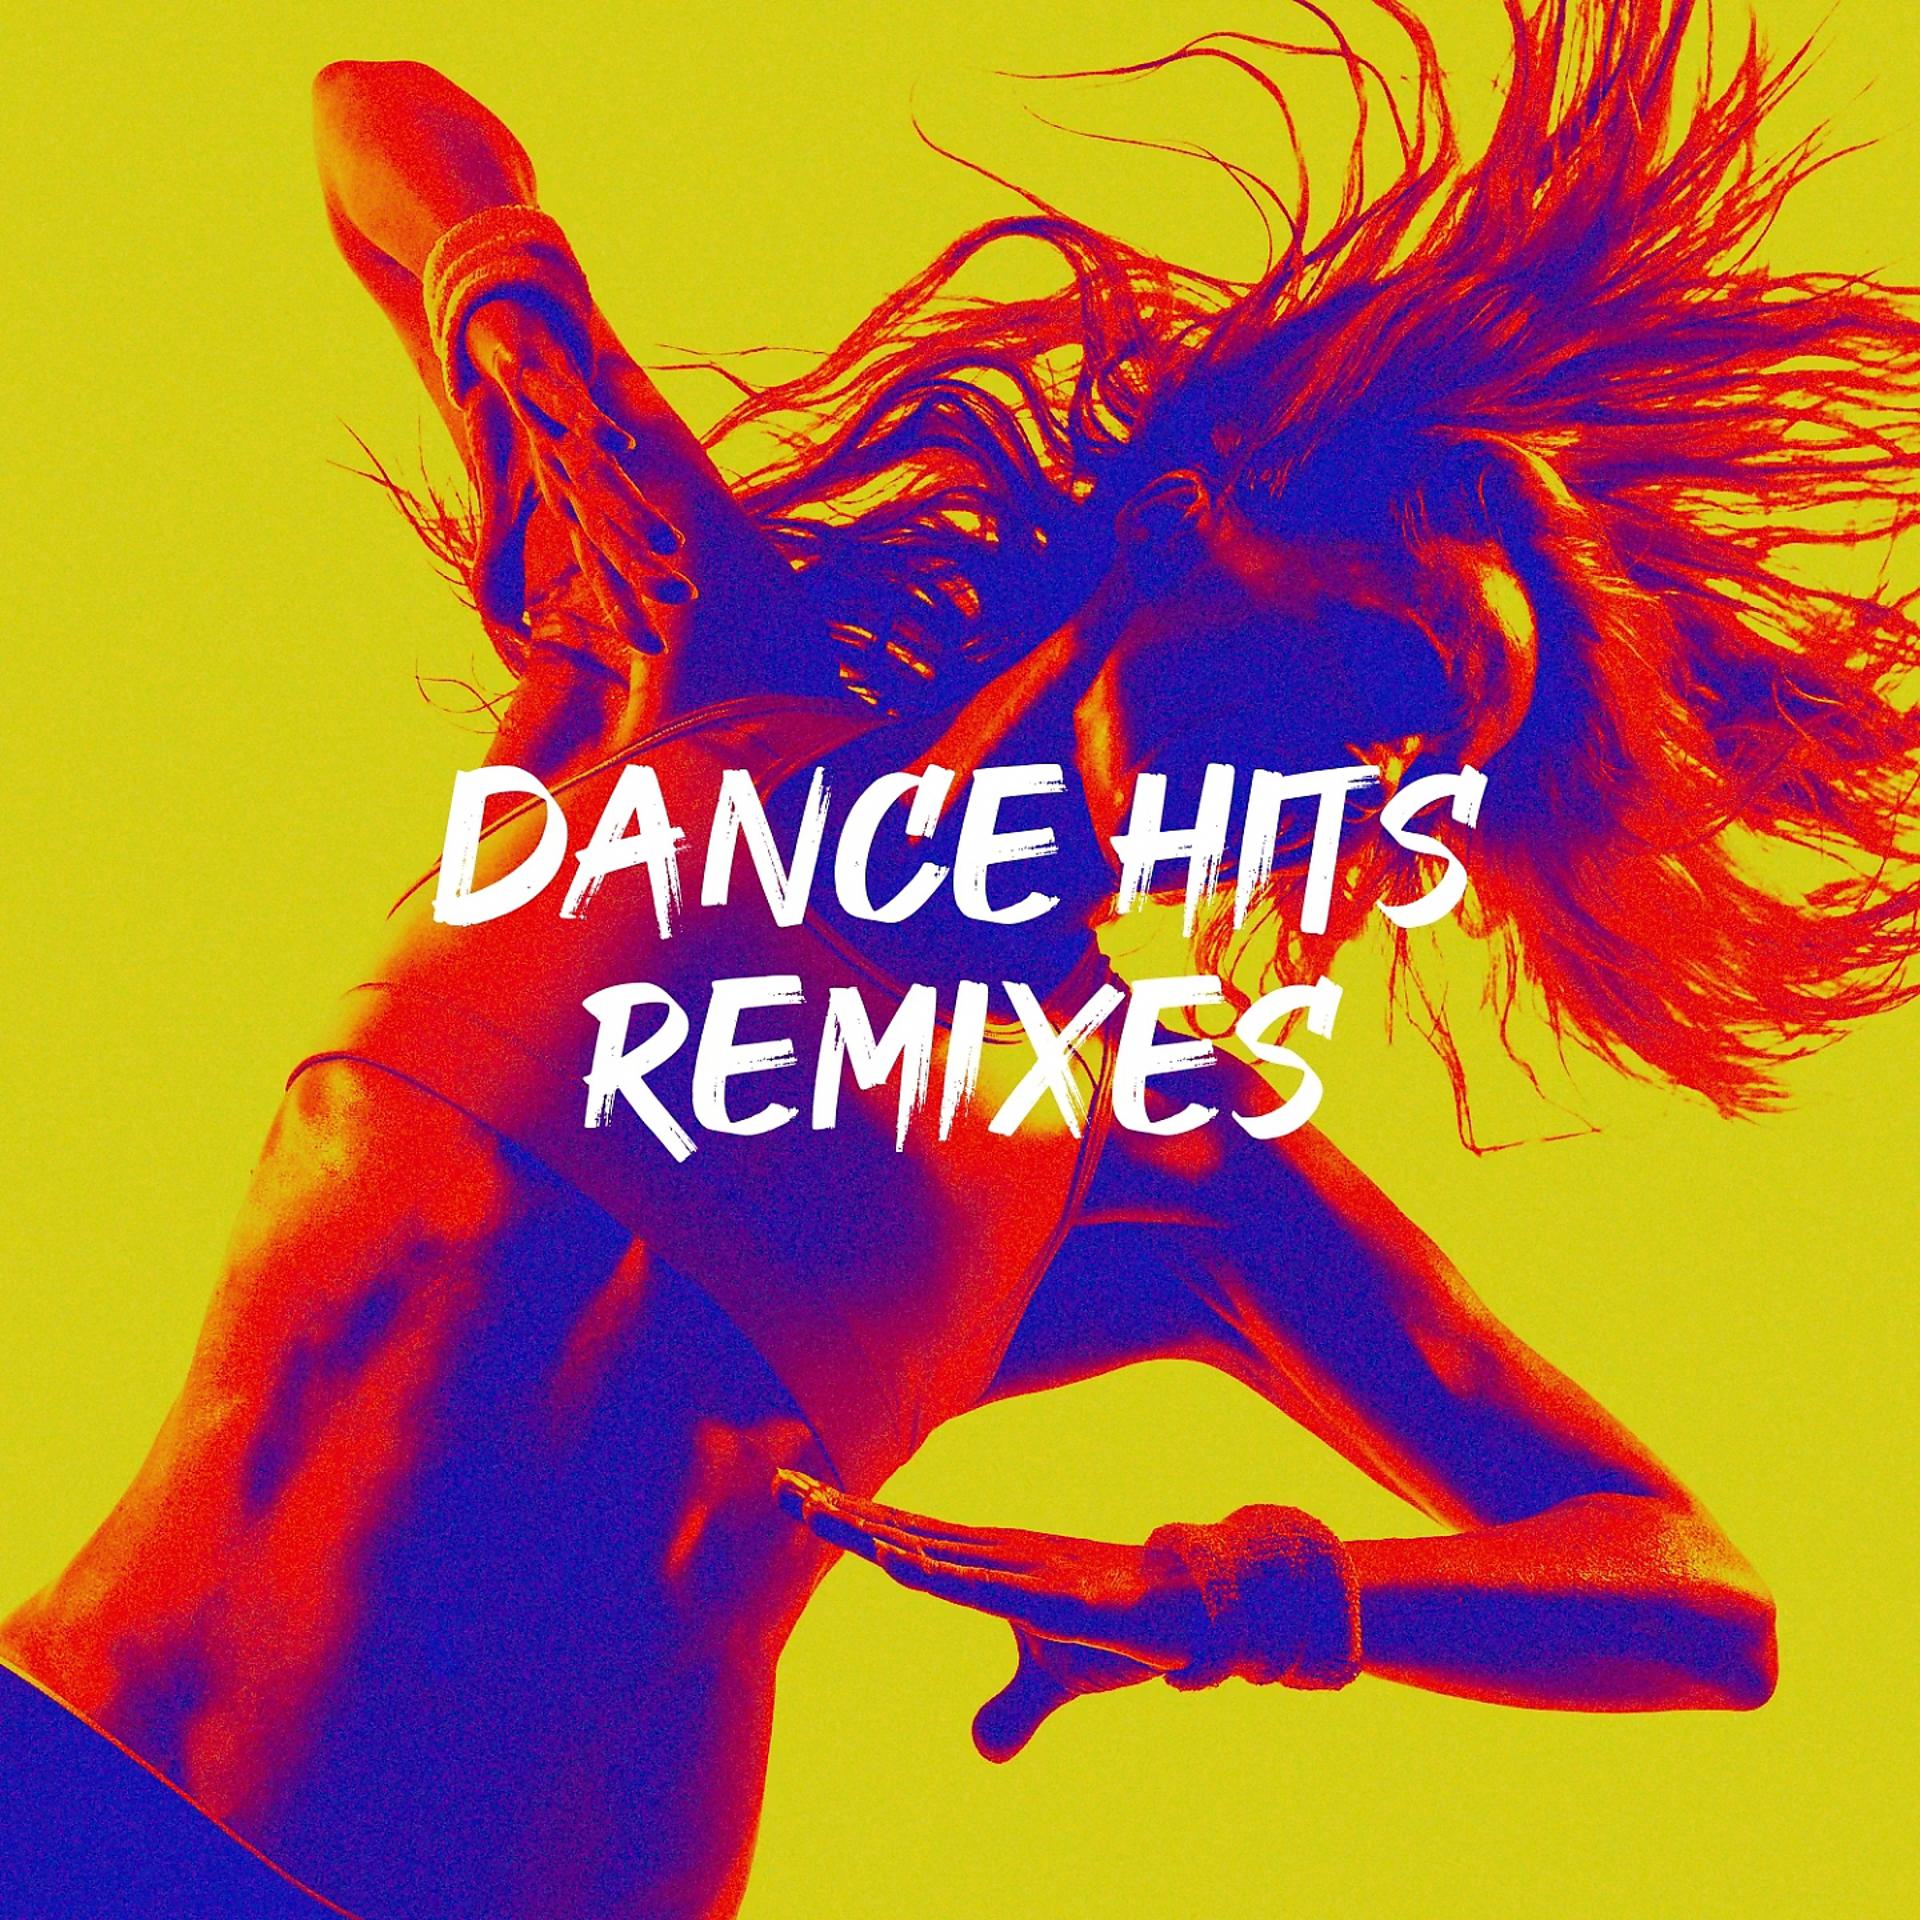 Dance remix mp3. Dance Hits. Картинка Dance Hits.